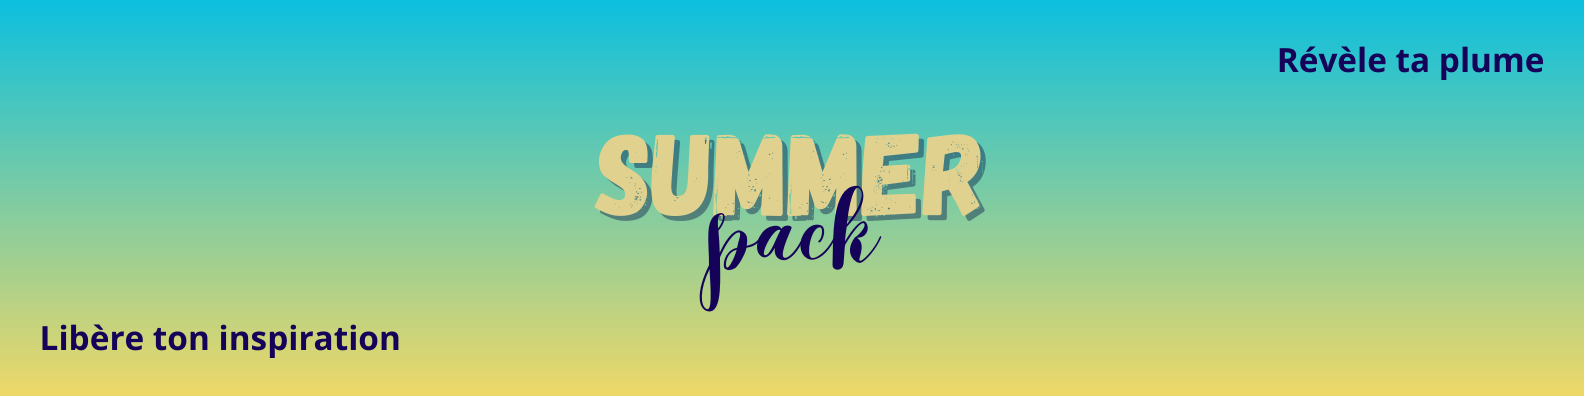 Summer Pack : Libère ton inspiration et révèle ta plume ! Bannière